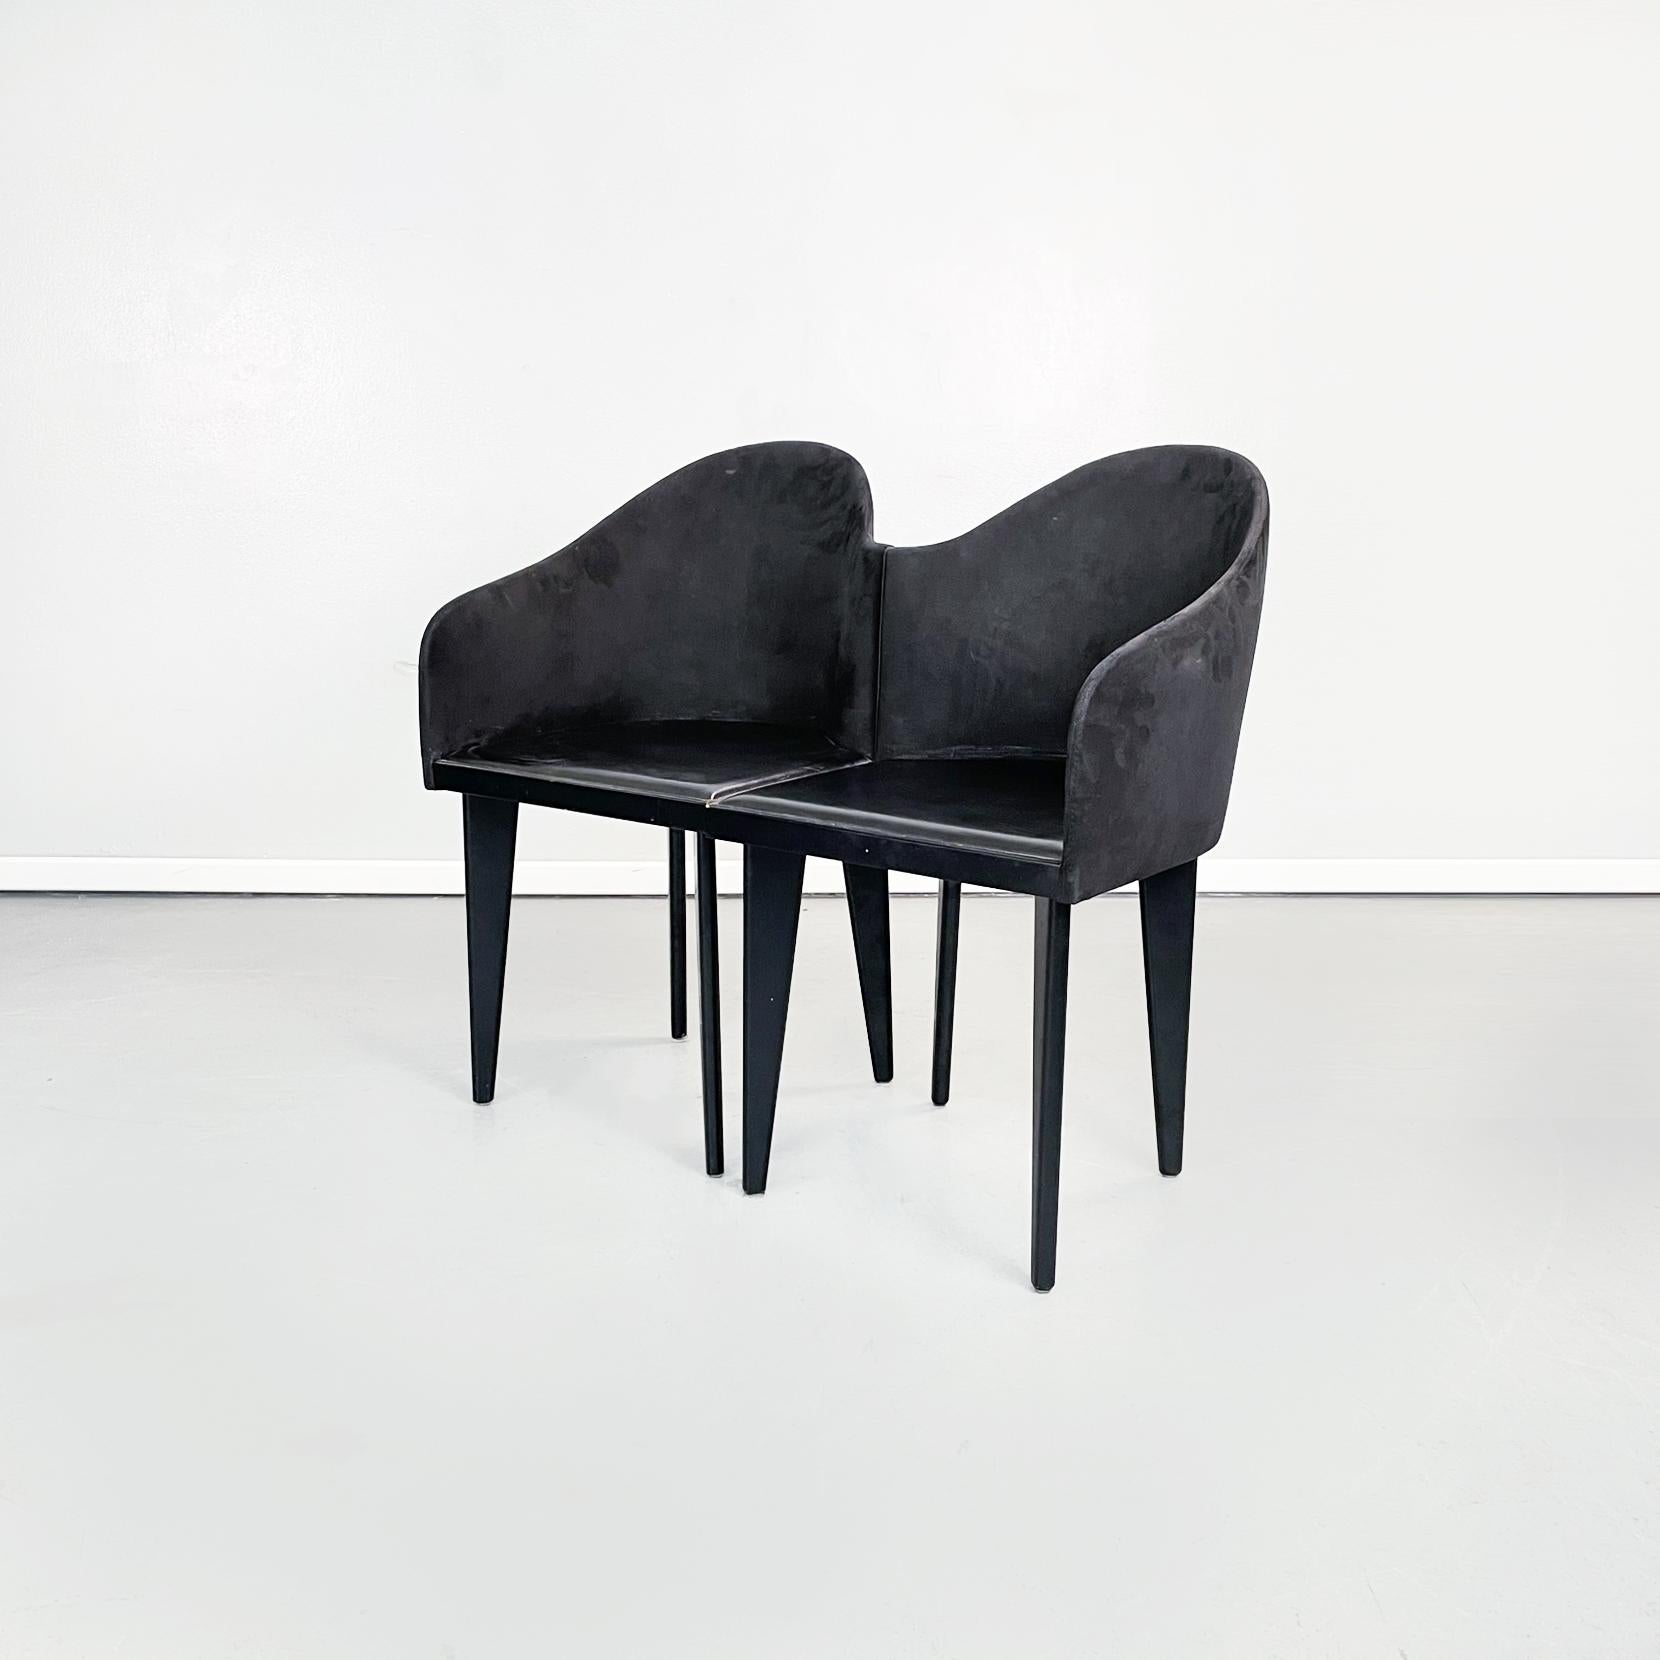 Italienische Moderne Schwarze Stühle Toscana von Sartogo und Grenon für Saporiti, 1980er Jahre
Satz von 4 Stühlen mod. Toscana mit quadratischem Sitz in schwarzem Kunstleder. Die Rückenlehne, die sich auf zwei Seiten erstreckt, hat eine gewundene